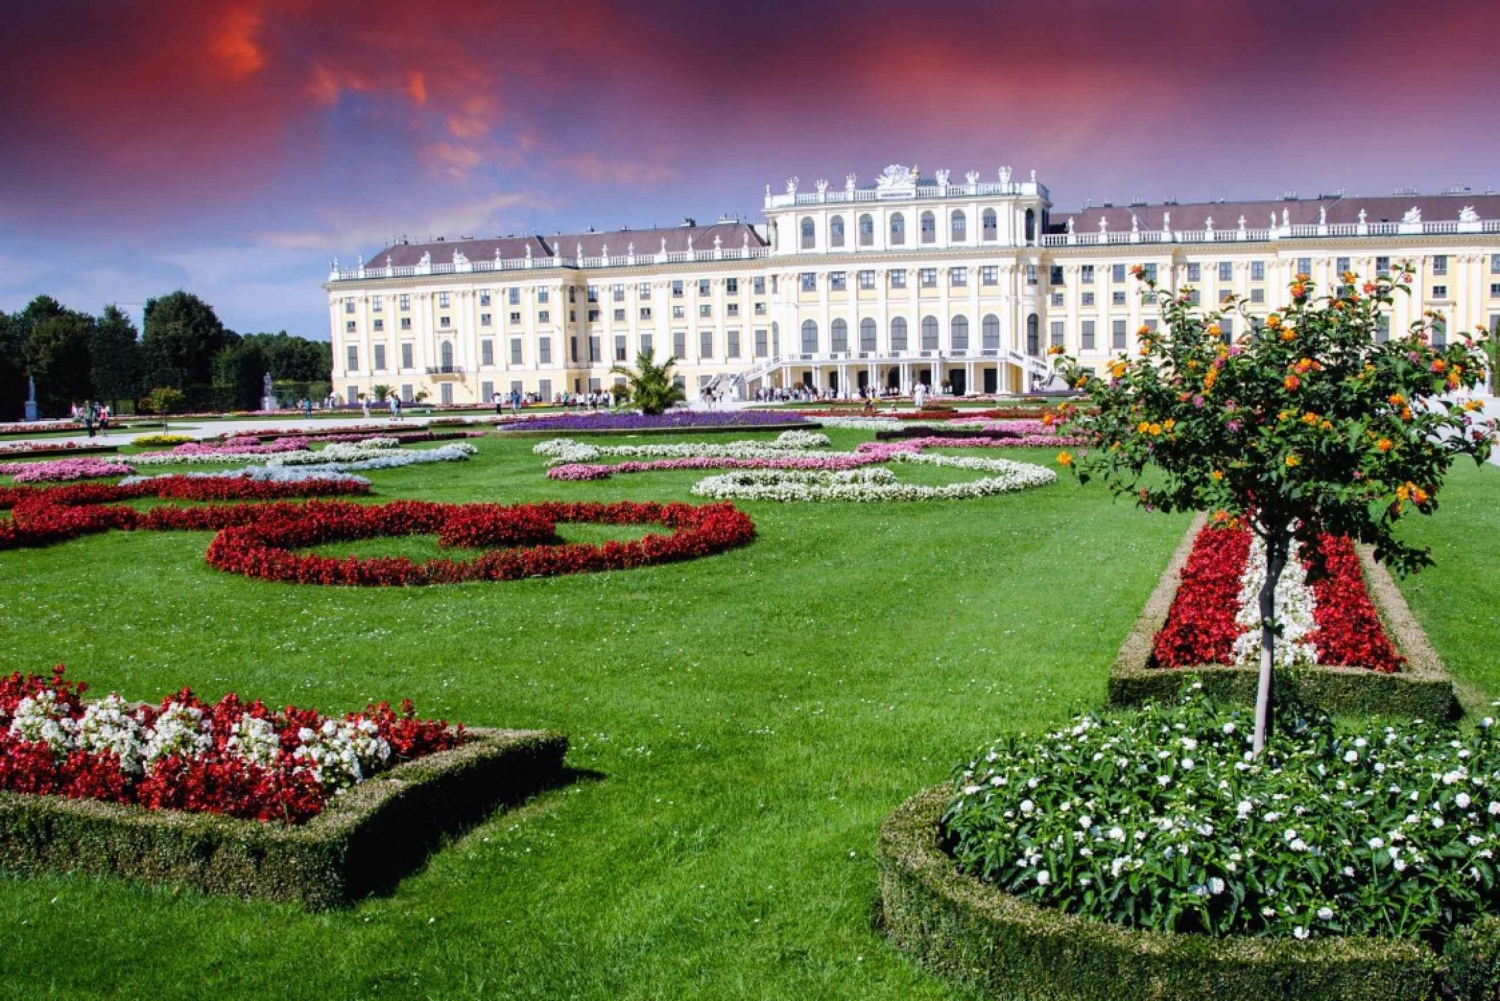 Excursão particular a pé pelo Palácio de Schoenbrunn